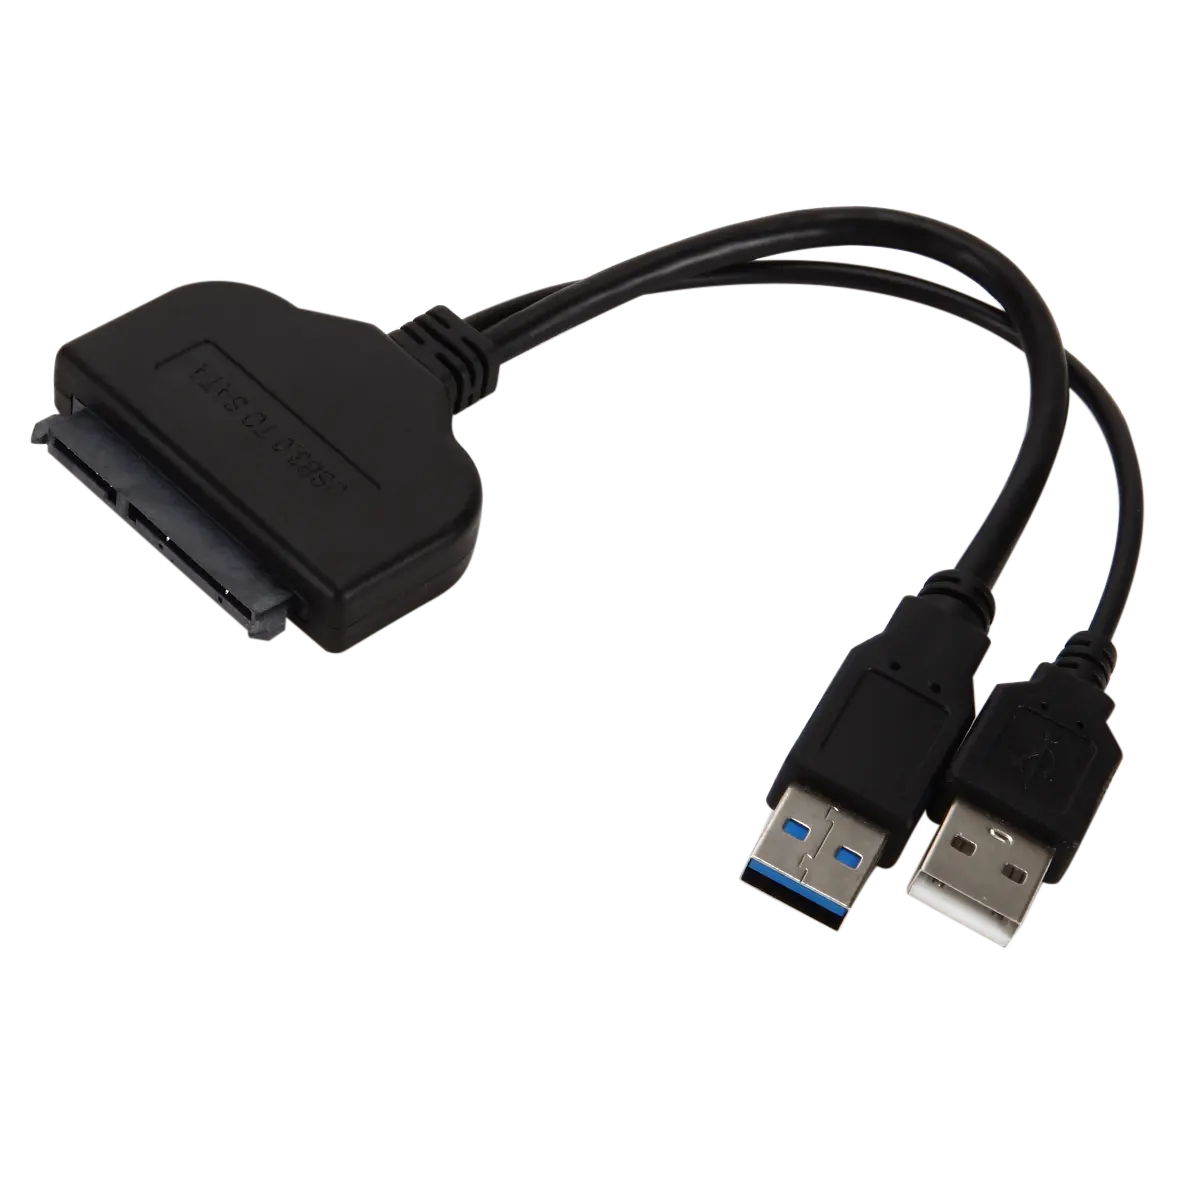 SATA USB3.0 adaptörü kablosu dönüştürücü 22 pin 2.5 inç HDD SSD sabit Disk dizüstü SATA adaptörü kablo USB 3.0 SATA